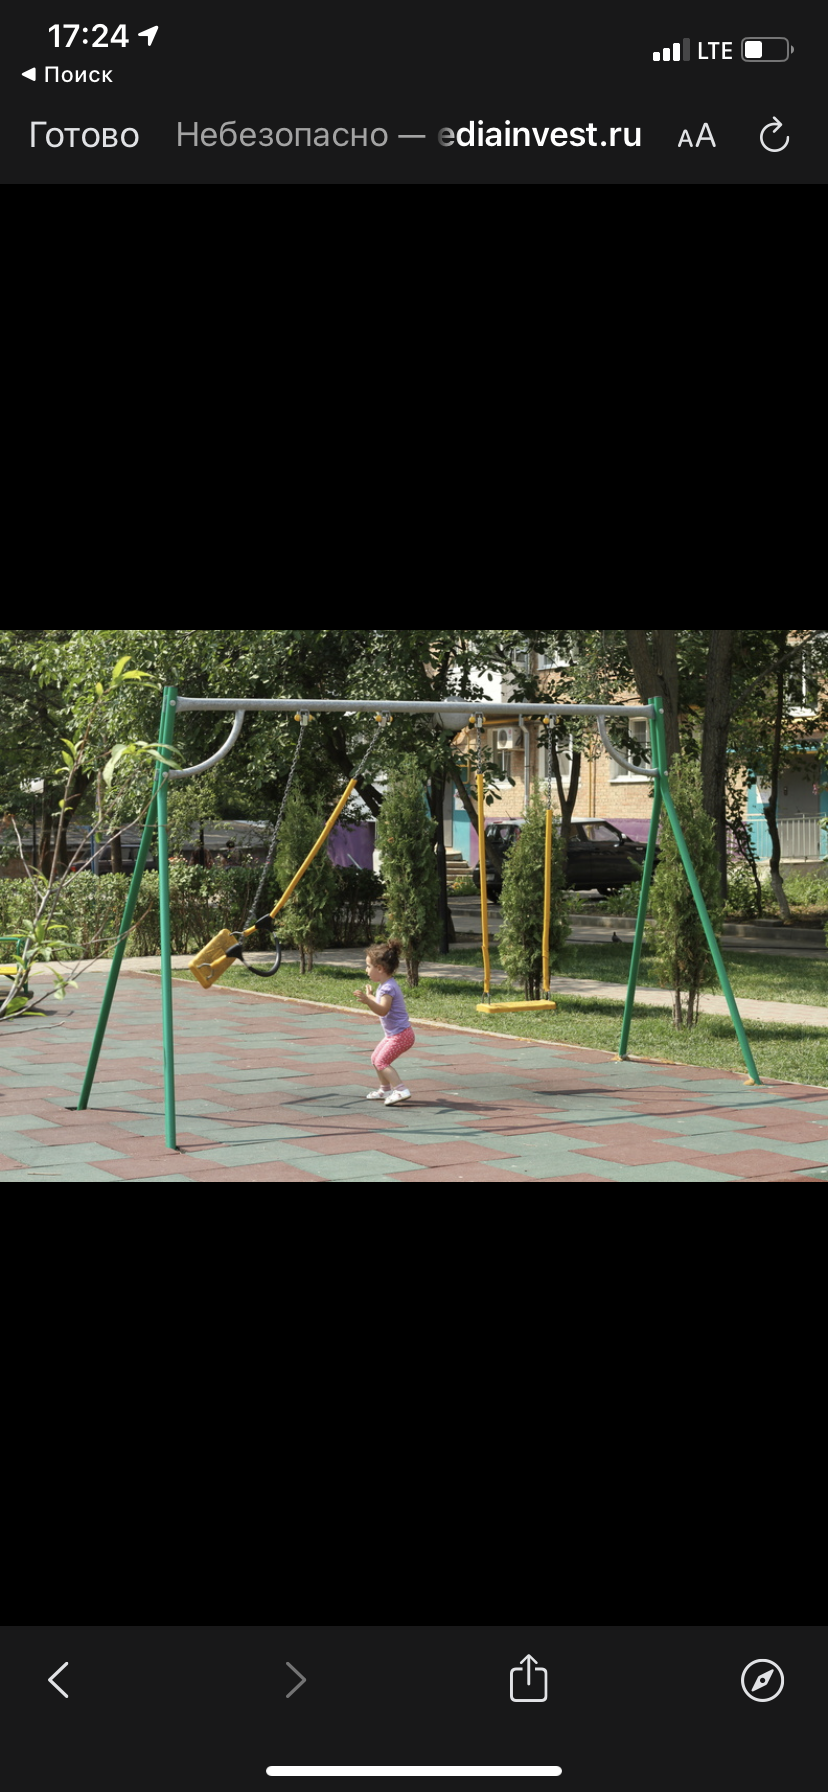 Жители СНТ в Завьяловском районе просят о детской площадке